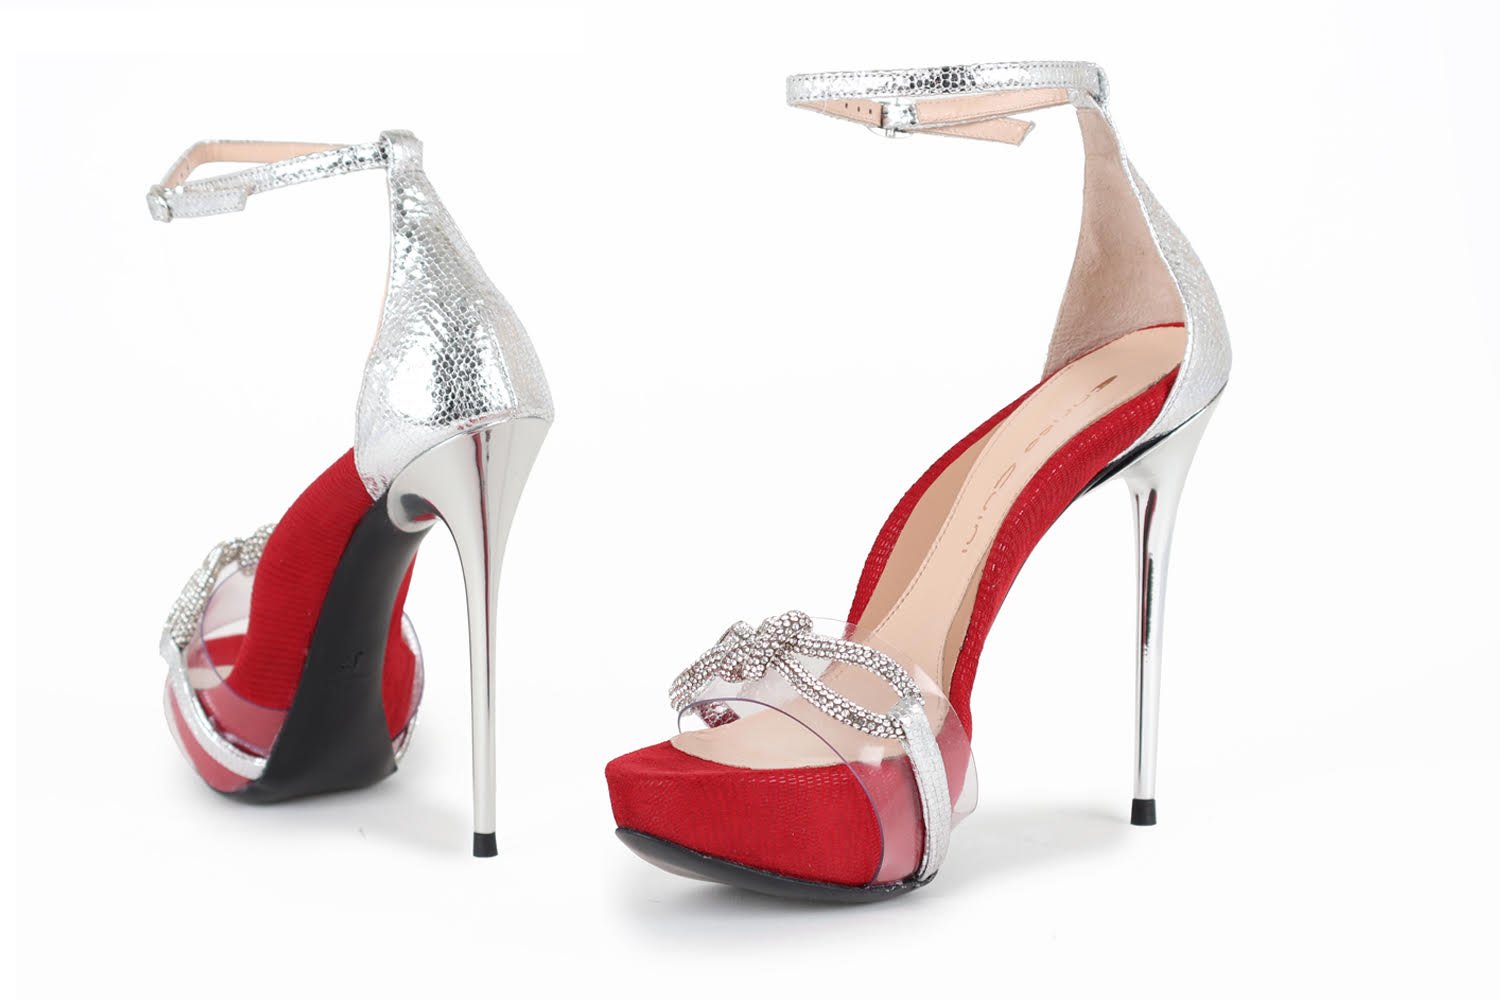 Heels | High, Mid & Low Heels | Women's Shoes | Carvela